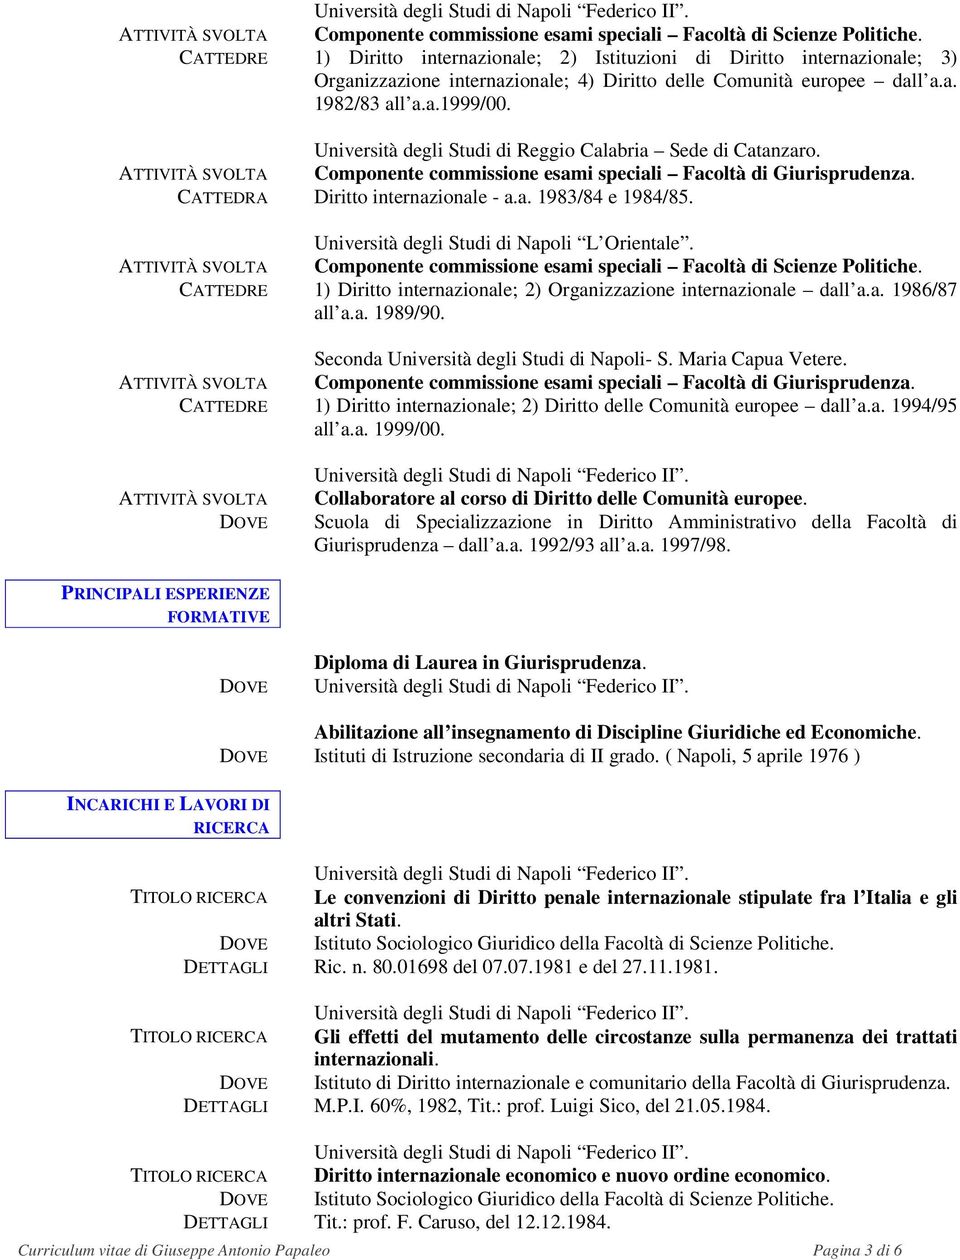 Università degli Studi di Reggio Calabria Sede di Catanzaro. Componente commissione esami speciali Facoltà di Giurisprudenza. CATTEDRA Diritto internazionale - a.a. 1983/84 e 1984/85.